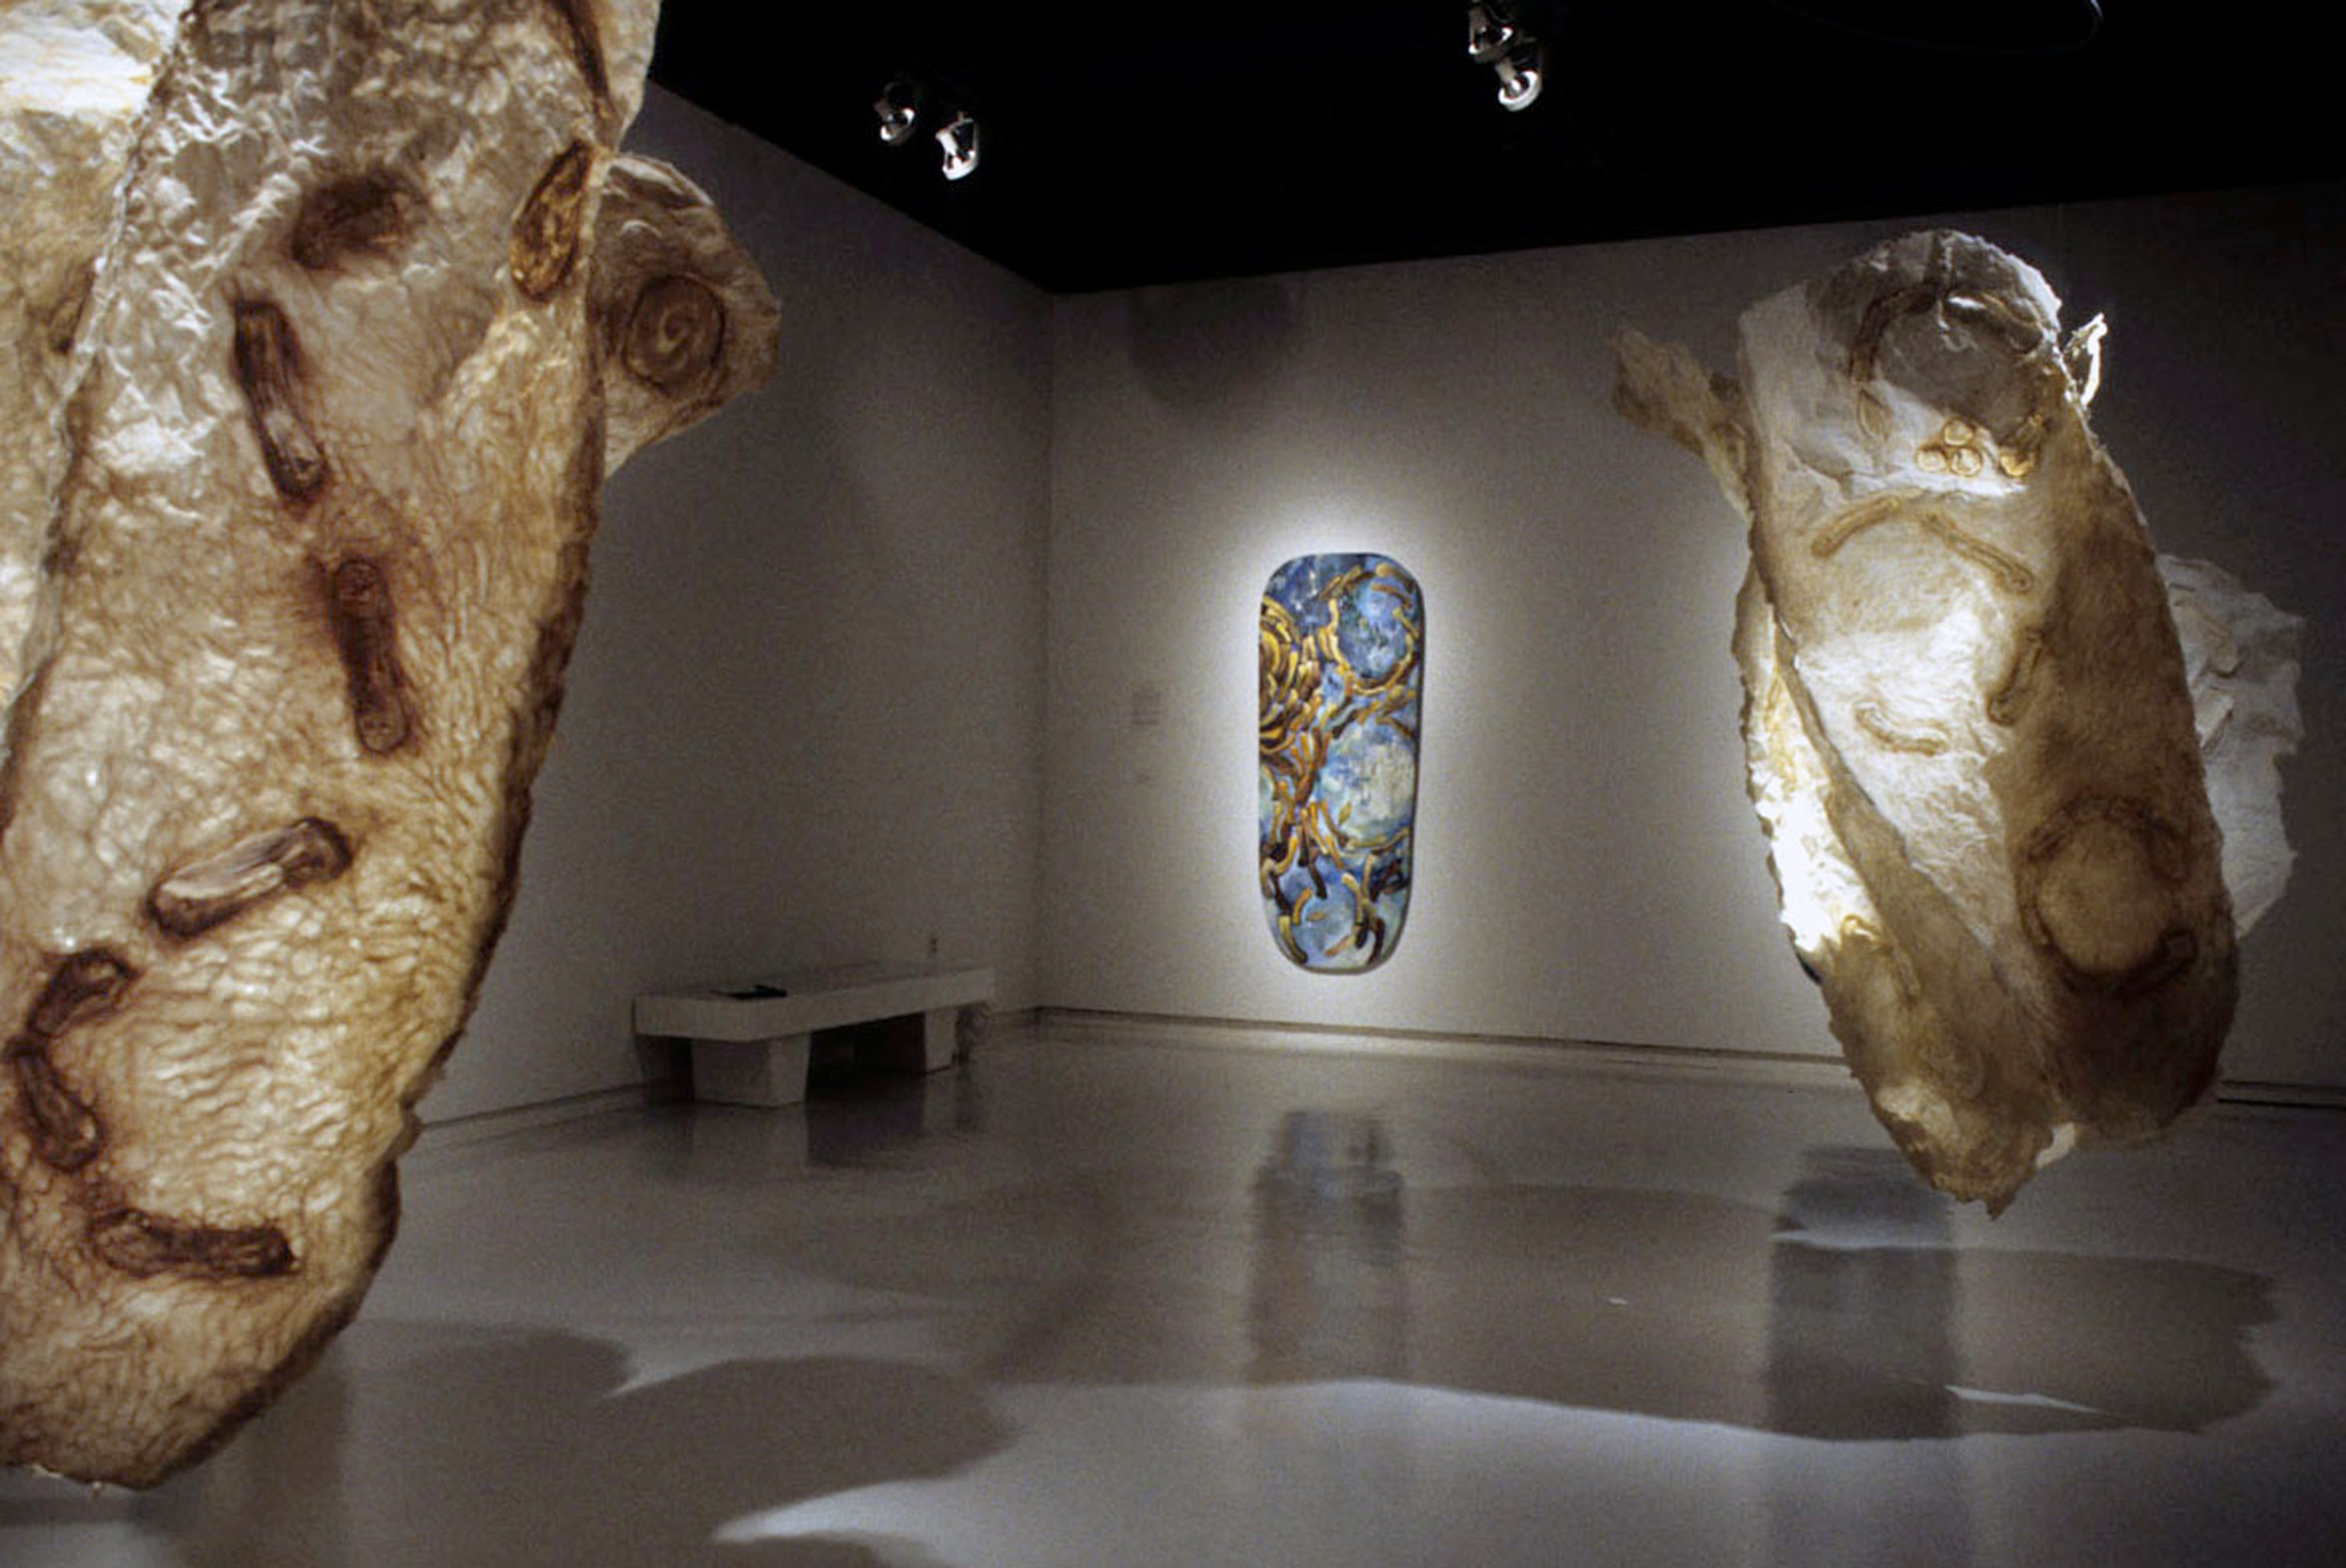  Painting+ Sculpture+ Narrative, 2001 mixed-media Installation, MICA Sabbatical Exhibit 